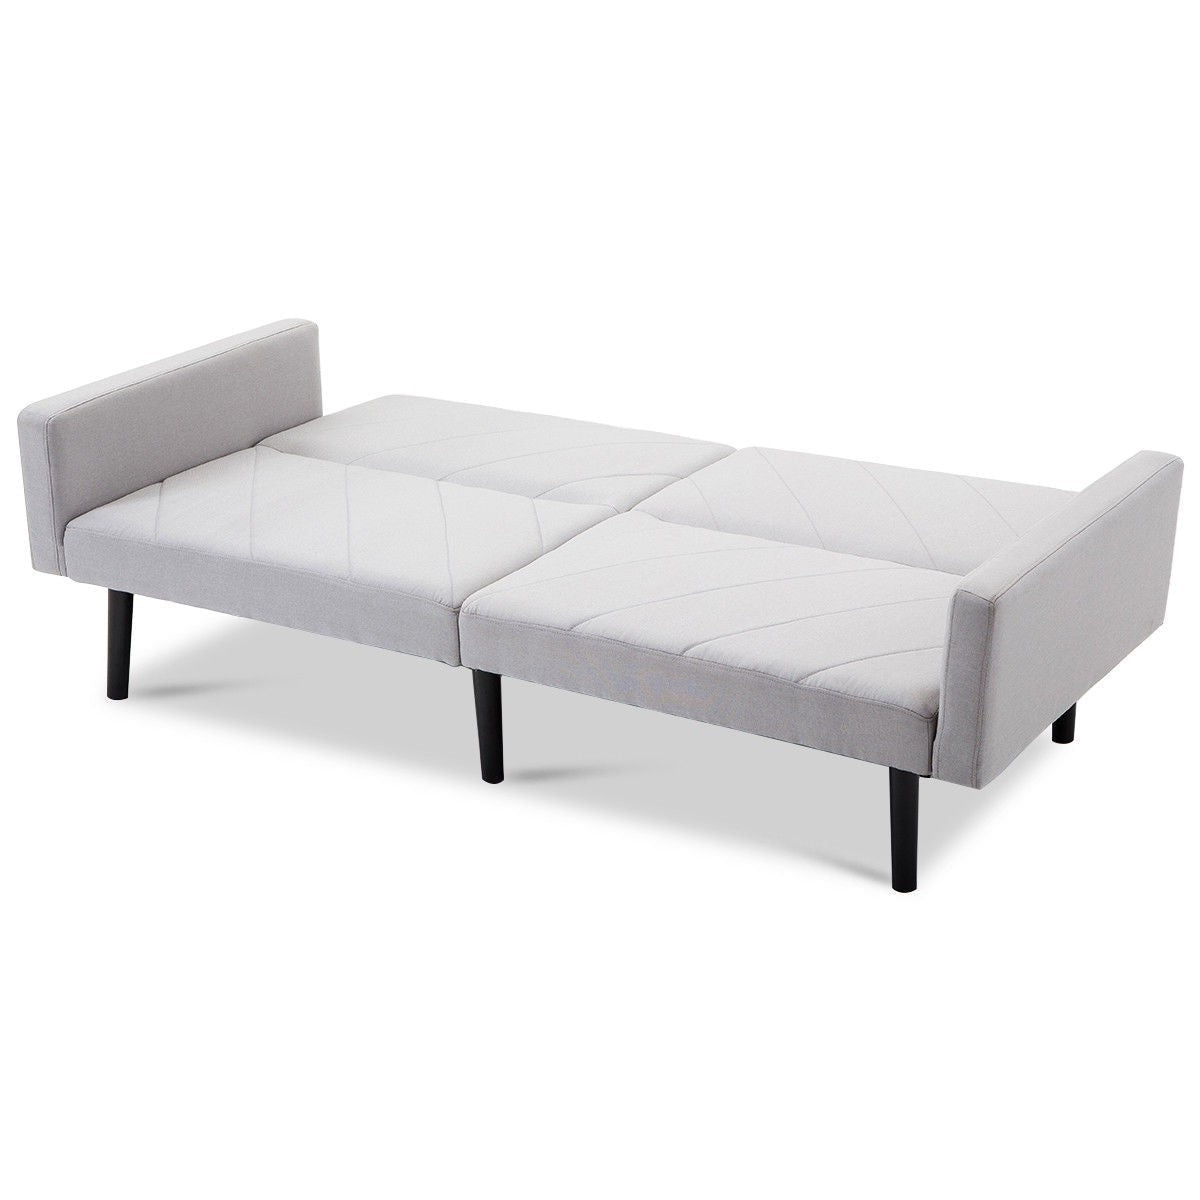 Living Room > Sofas - Modern Gray Linen Split-Back Futon Sofa Bed Couch